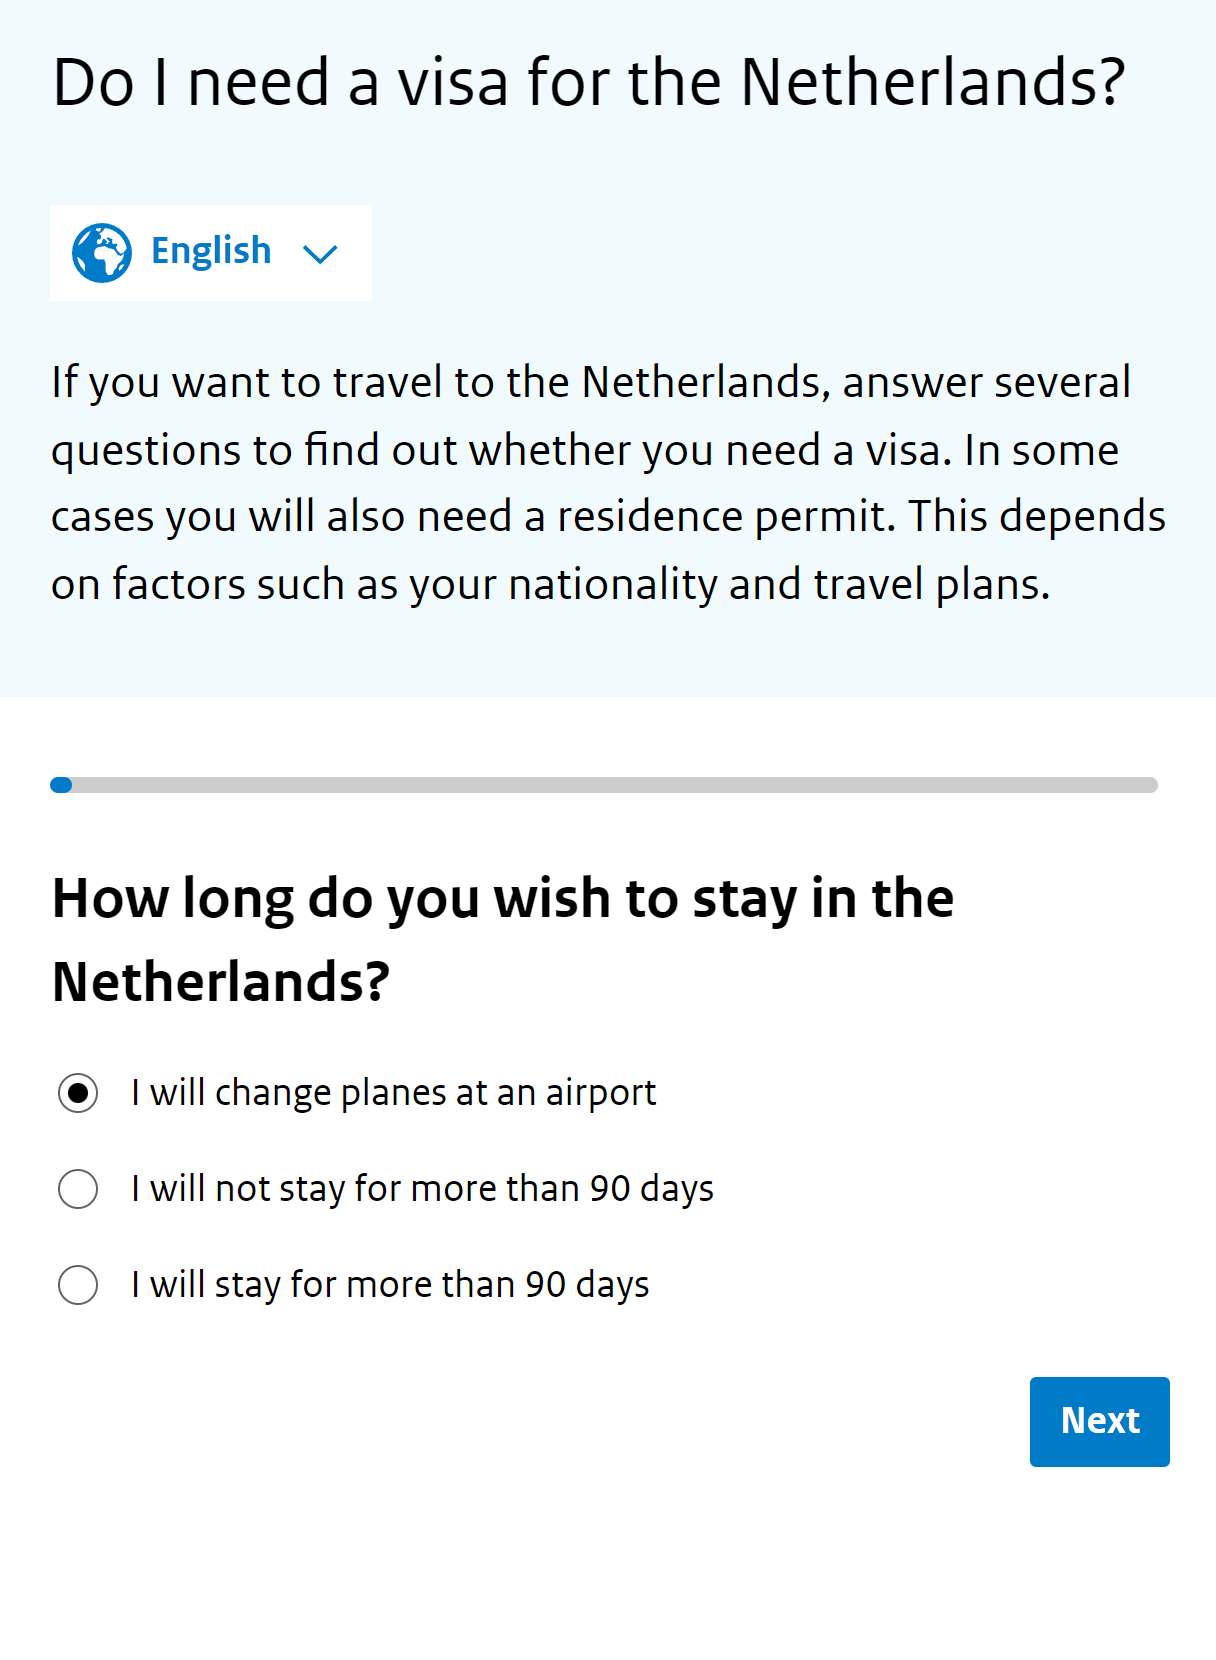 Чтобы узнать, требуется ли вам виза для пересадки в Нидерландах, заполните анкету на правительственном сайте. Для начала укажите, как долго пробудете в стране. Транзитные путешественники выбирают первый вариант